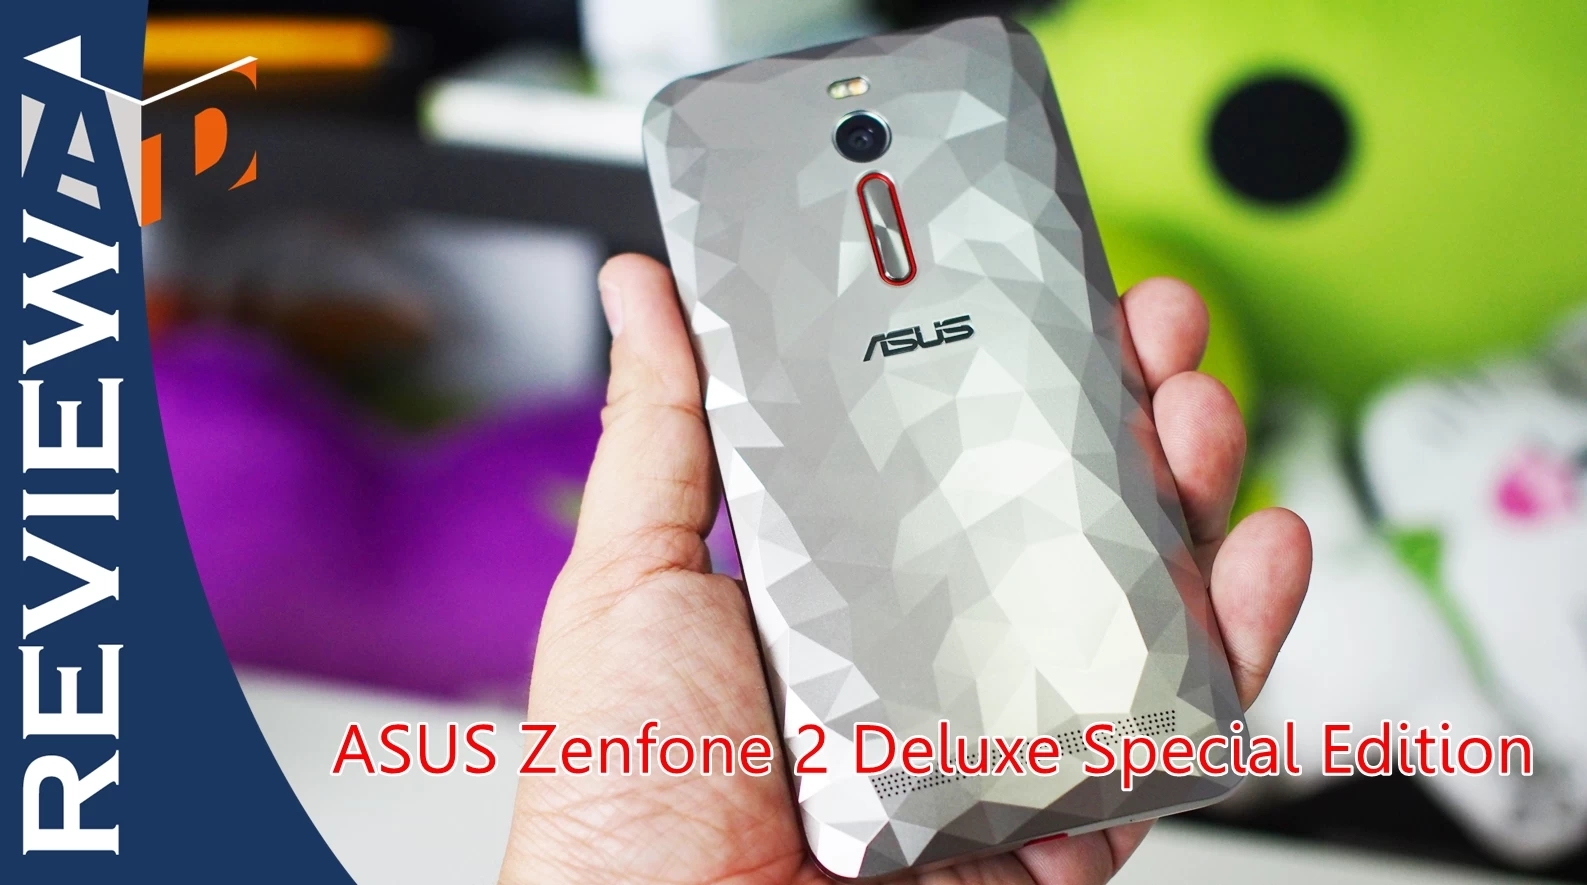 PC240332 | Asus Zenfone 2 | รีวิว Asus Zenfone 2 Deluxe Special Edition หรูและแรงขึ้นอีกนิด พร้อมหน่วยความจำระดับ 128GB + 128GB